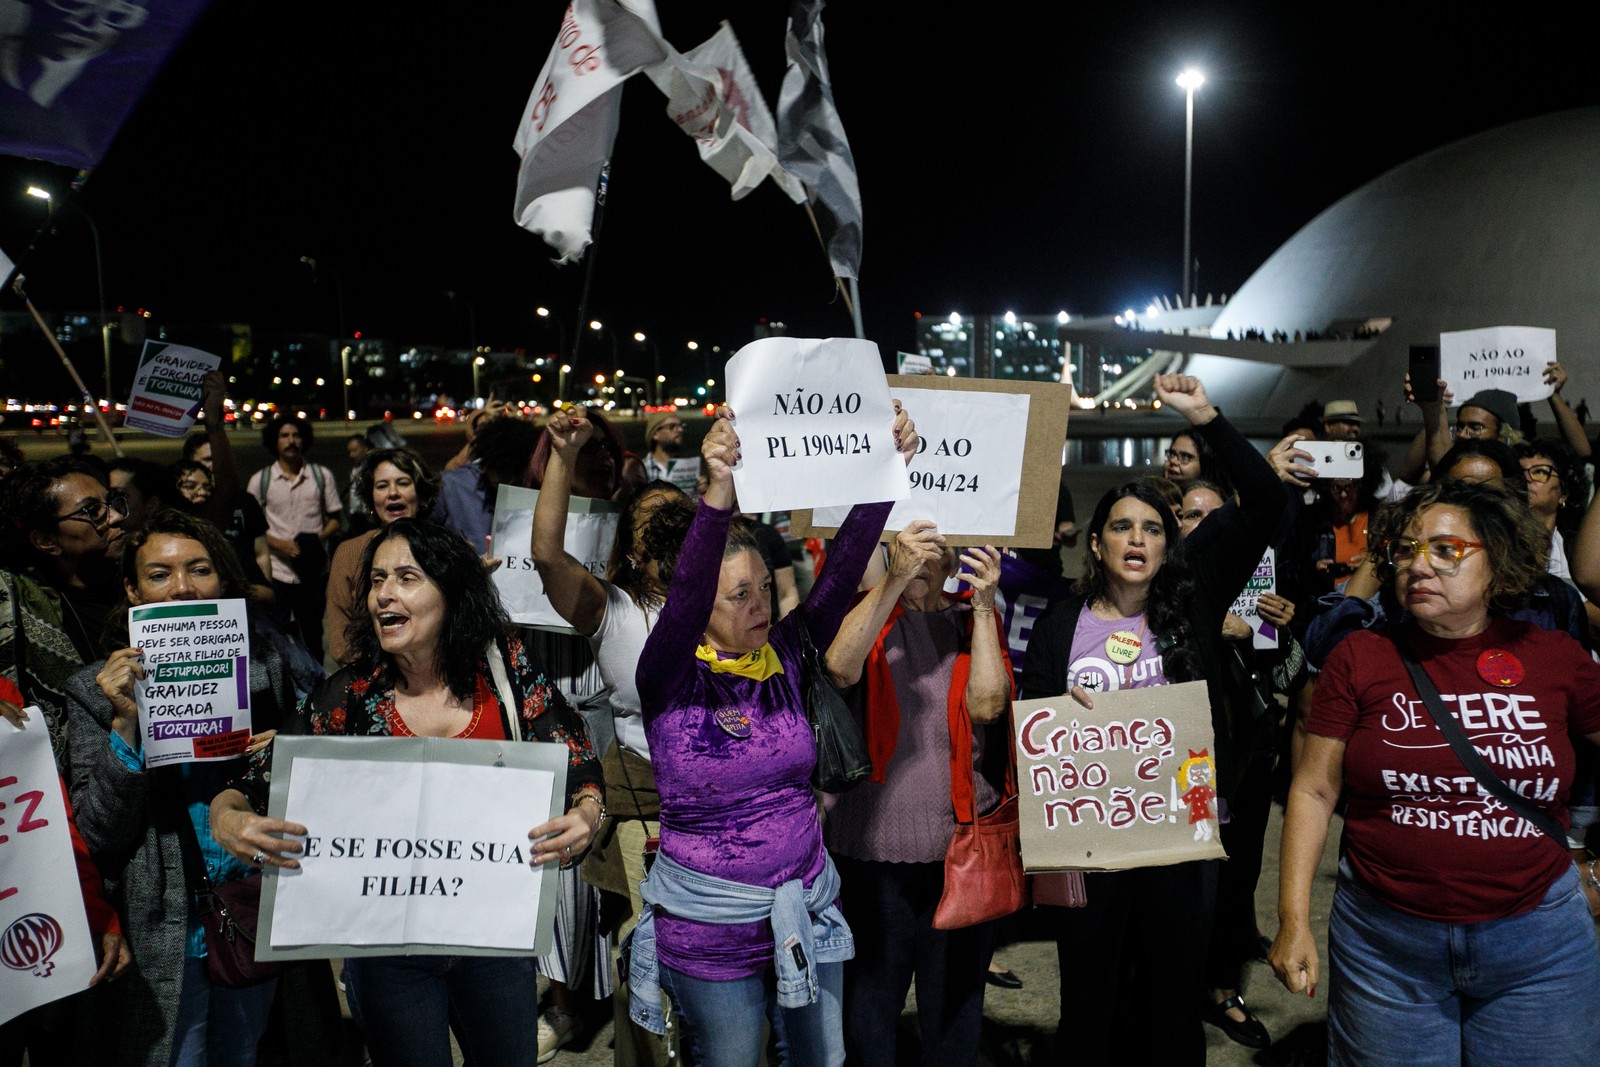 Ato em Brasília contra a PL1904 - PL da Gravidez Infantil (PL 1904/24) proíbe a realização do aborto legal acima de 22 semanas gestacional em caso de estupro. — Foto: Brenno Carvalho / Agência O Globo.